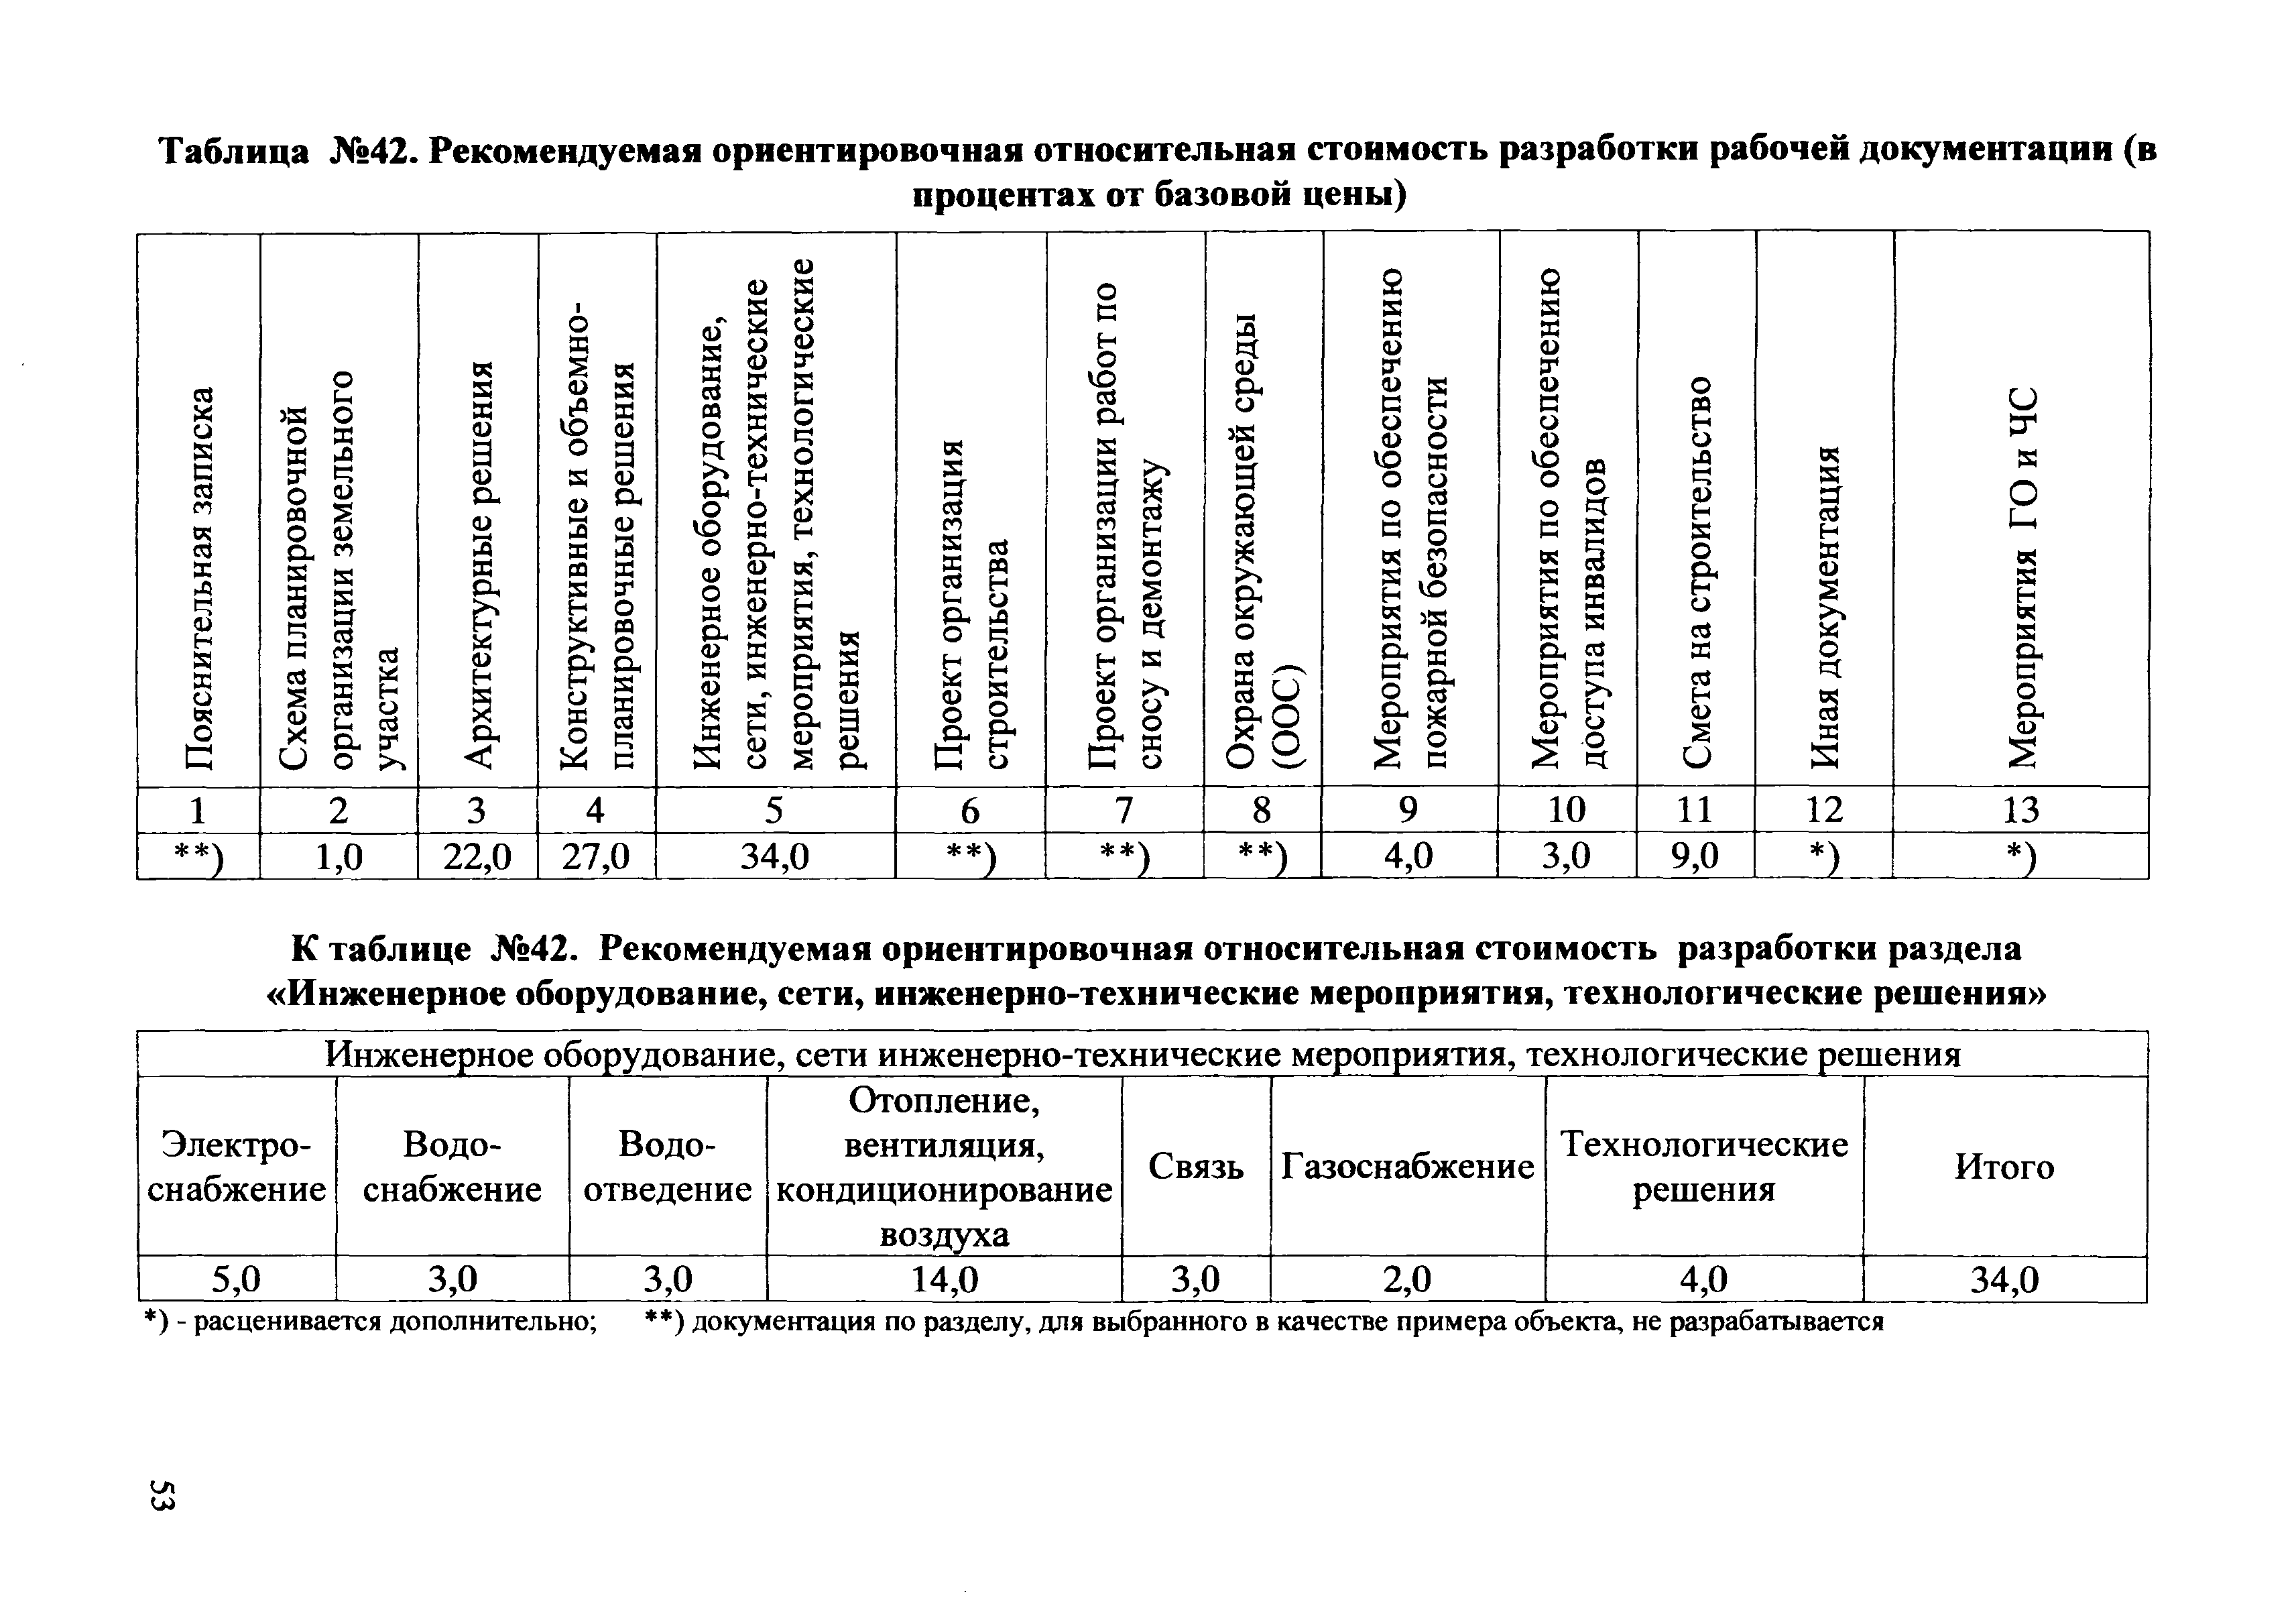 СБЦП 81-2001-03